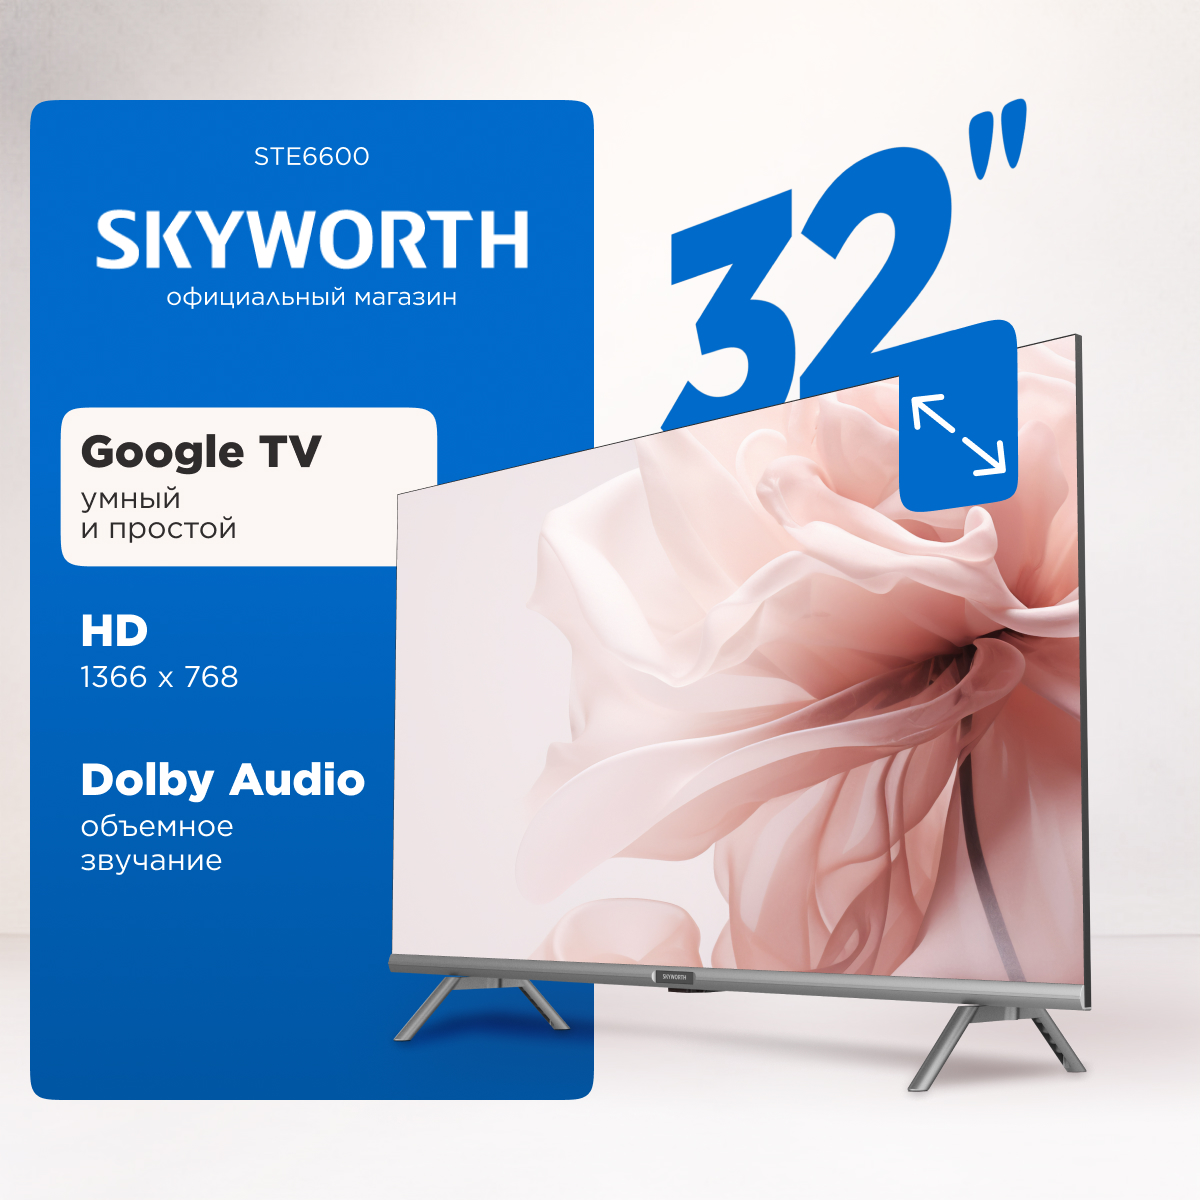 Телевизор Skyworth 32STE6600, 32"(81 см), HD, купить в Москве, цены в интернет-магазинах на Мегамаркет